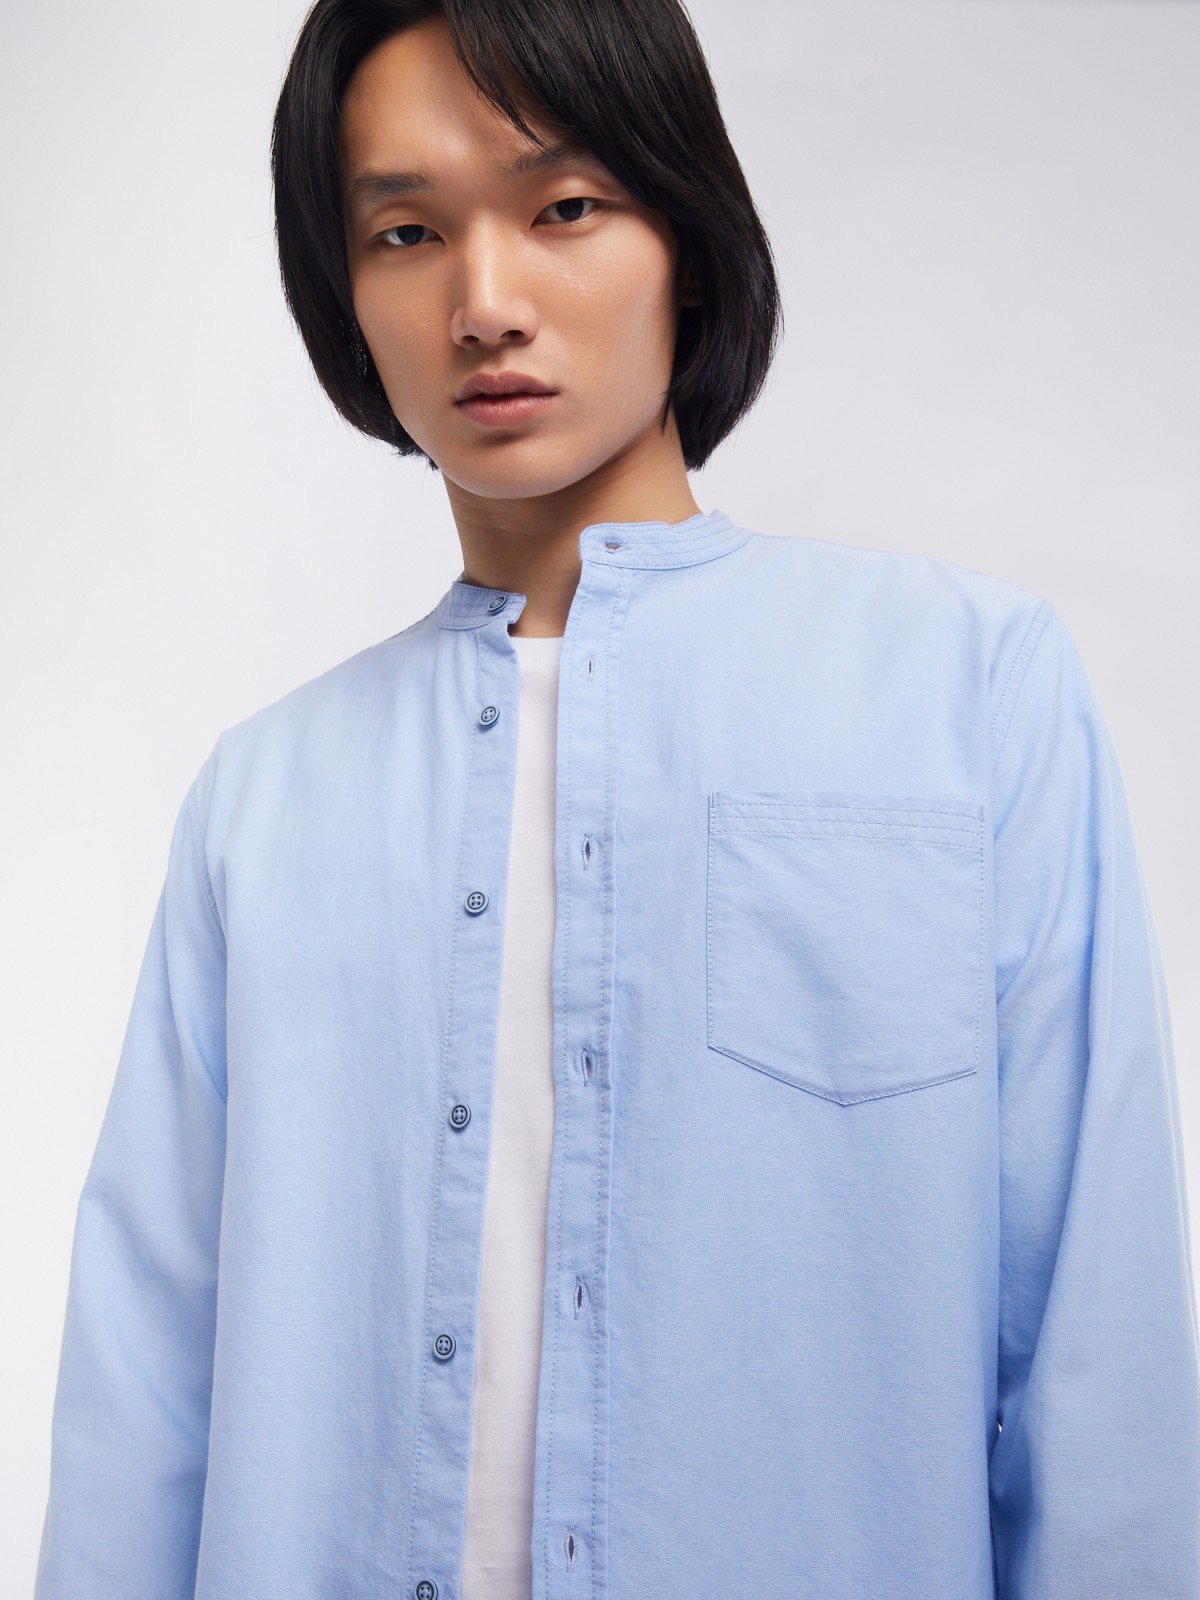 Офисная рубашка из хлопка с воротником-стойкой и длинным рукавом zolla 014122159033, цвет светло-голубой, размер S - фото 4